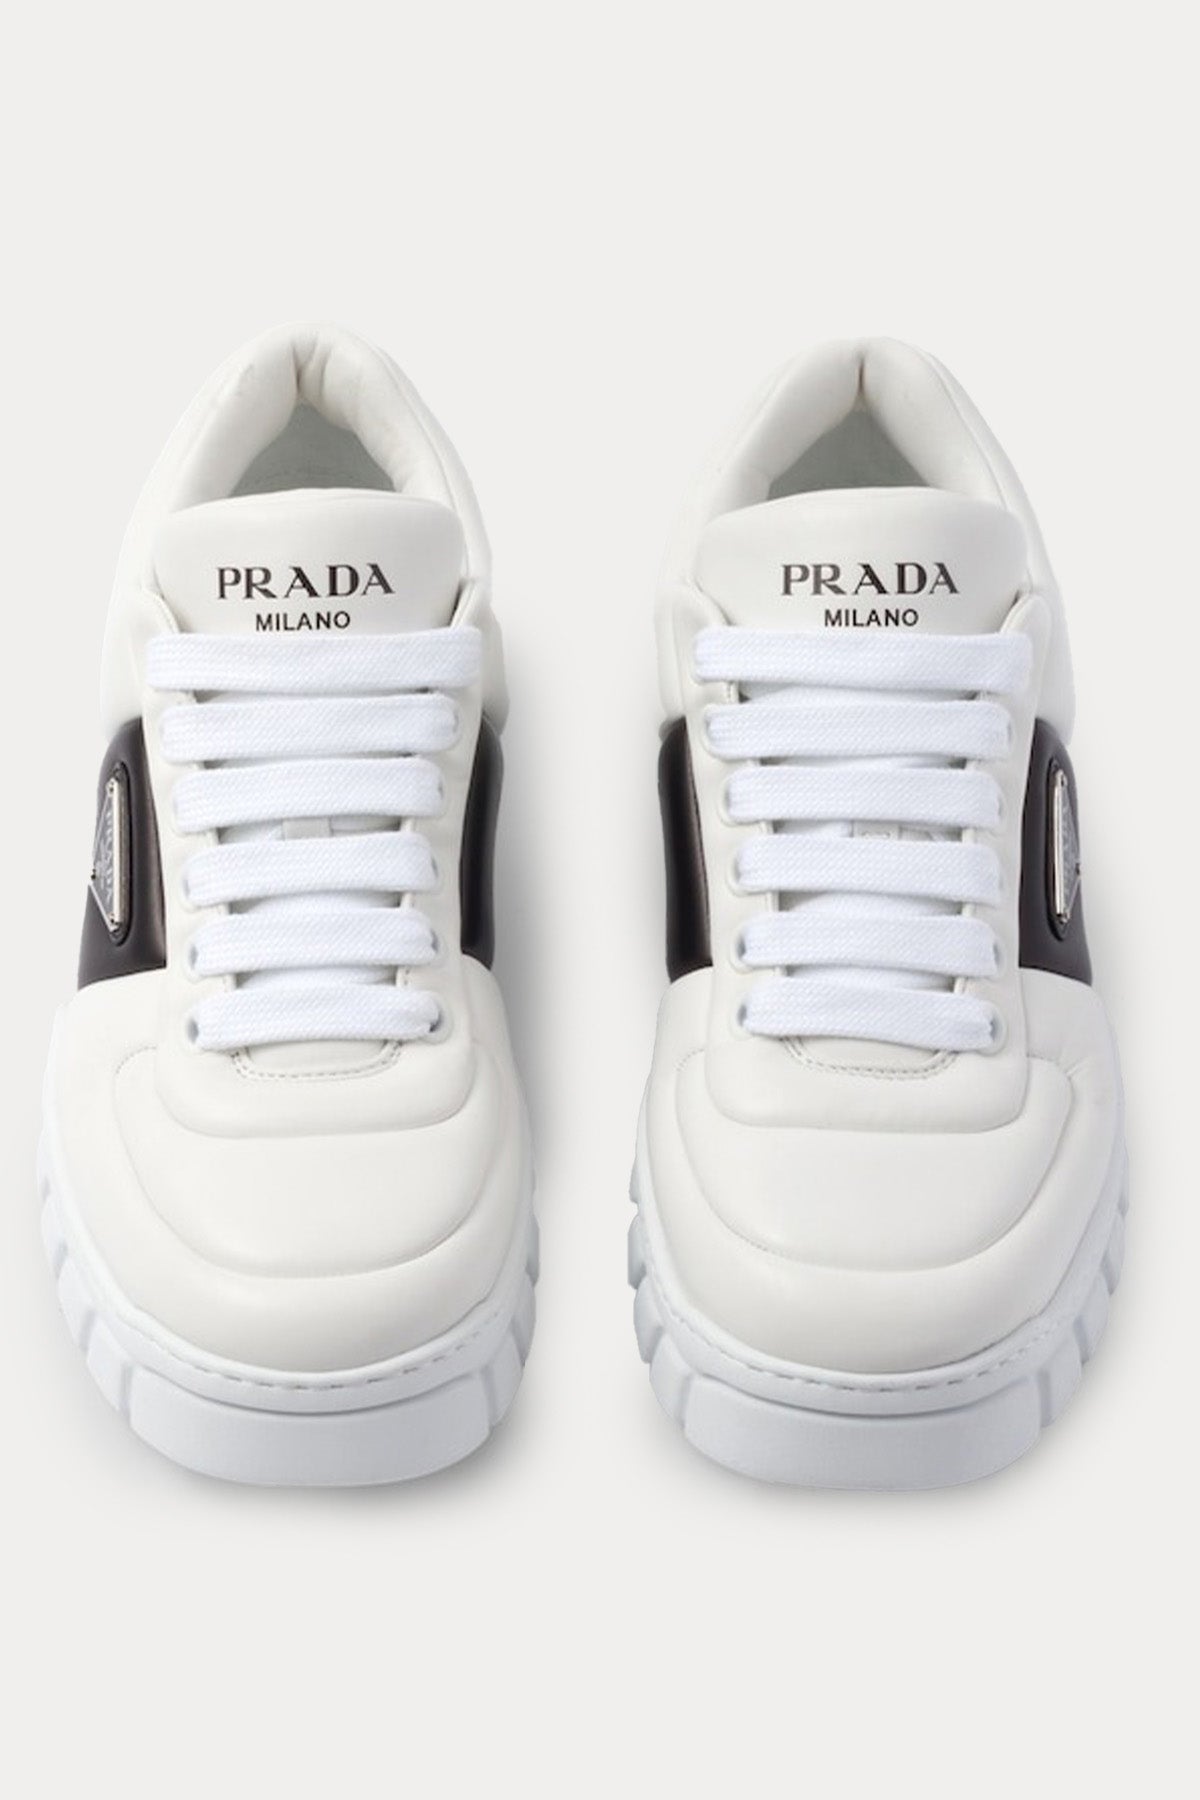 Prada Dolgulu Napa Deri Logolu Extralight Sneaker Ayakkabı